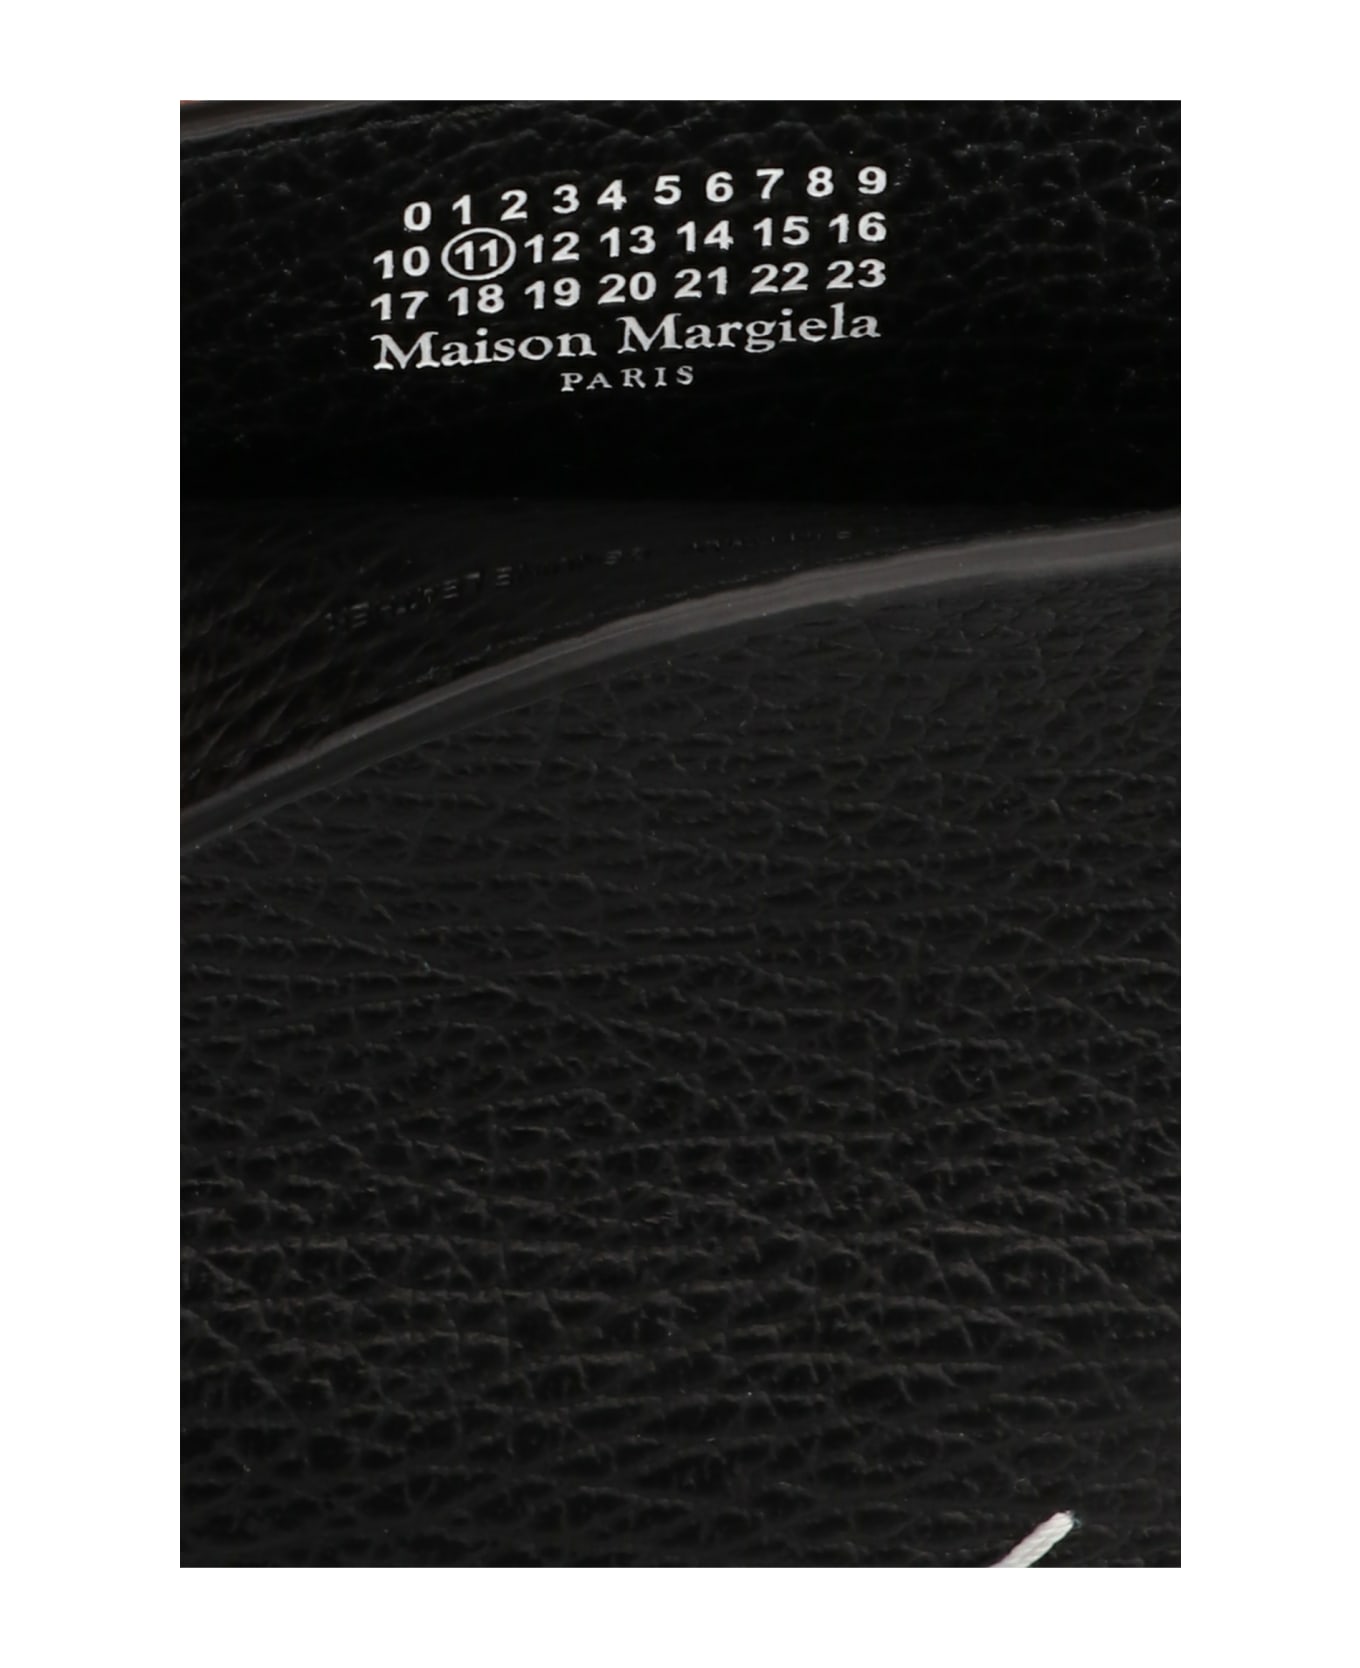 Maison Margiela 'stitching' Smartphone Bag - Black  